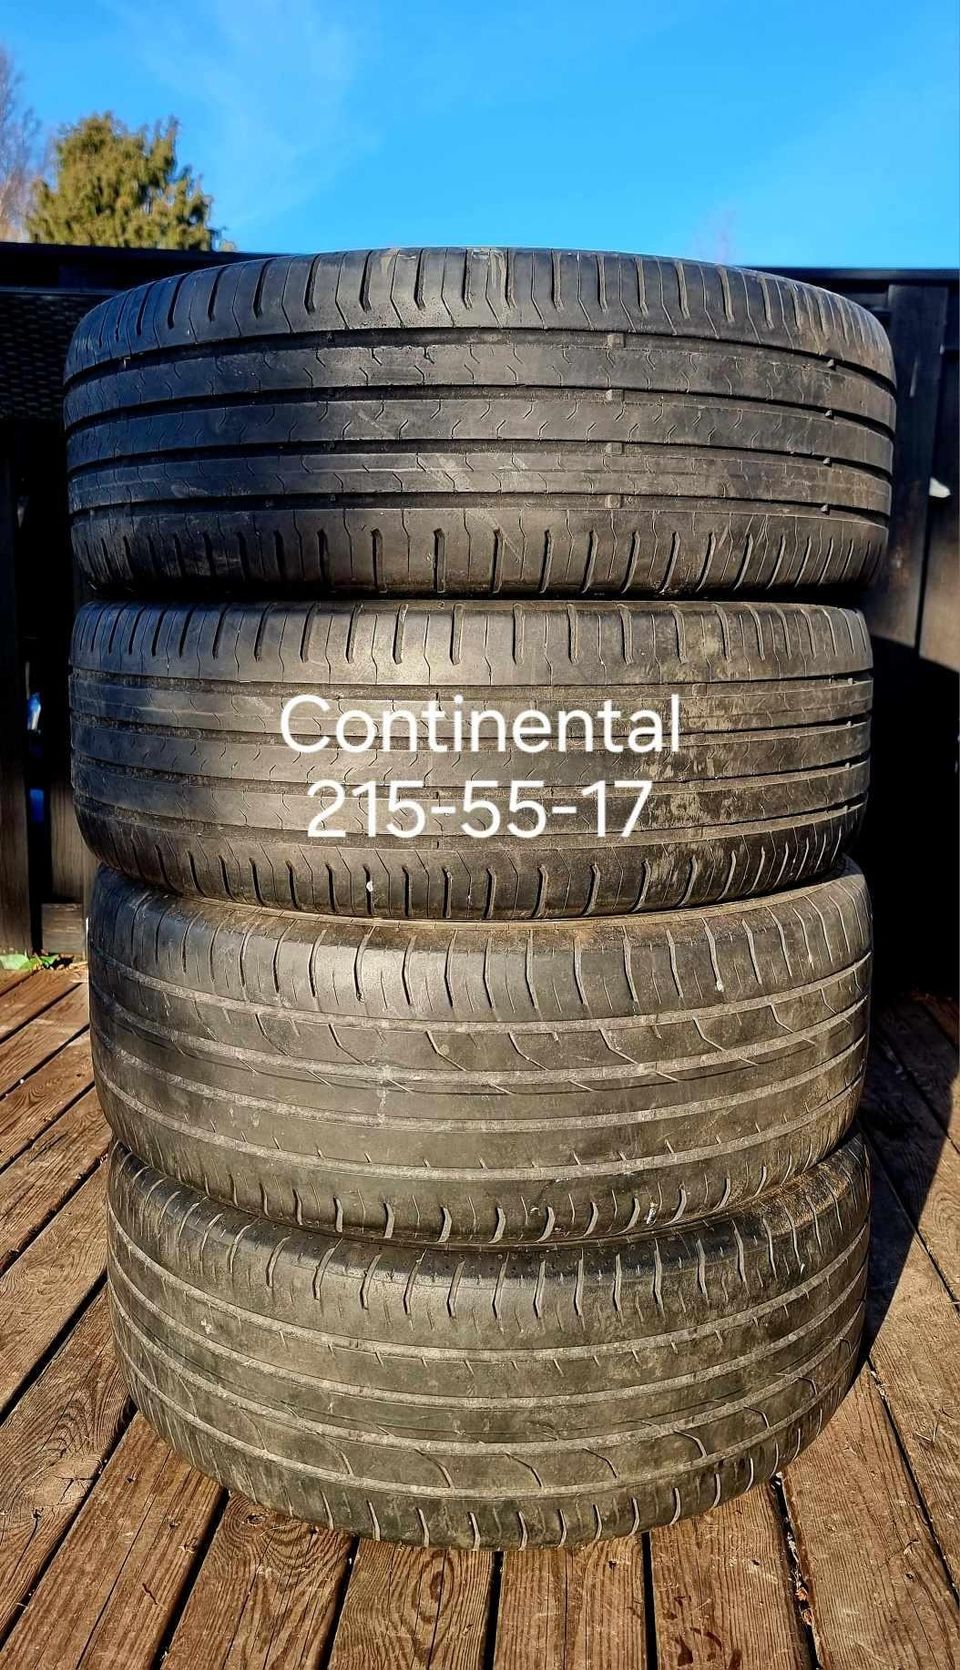 Continental 215-55-17 kesärenkaat